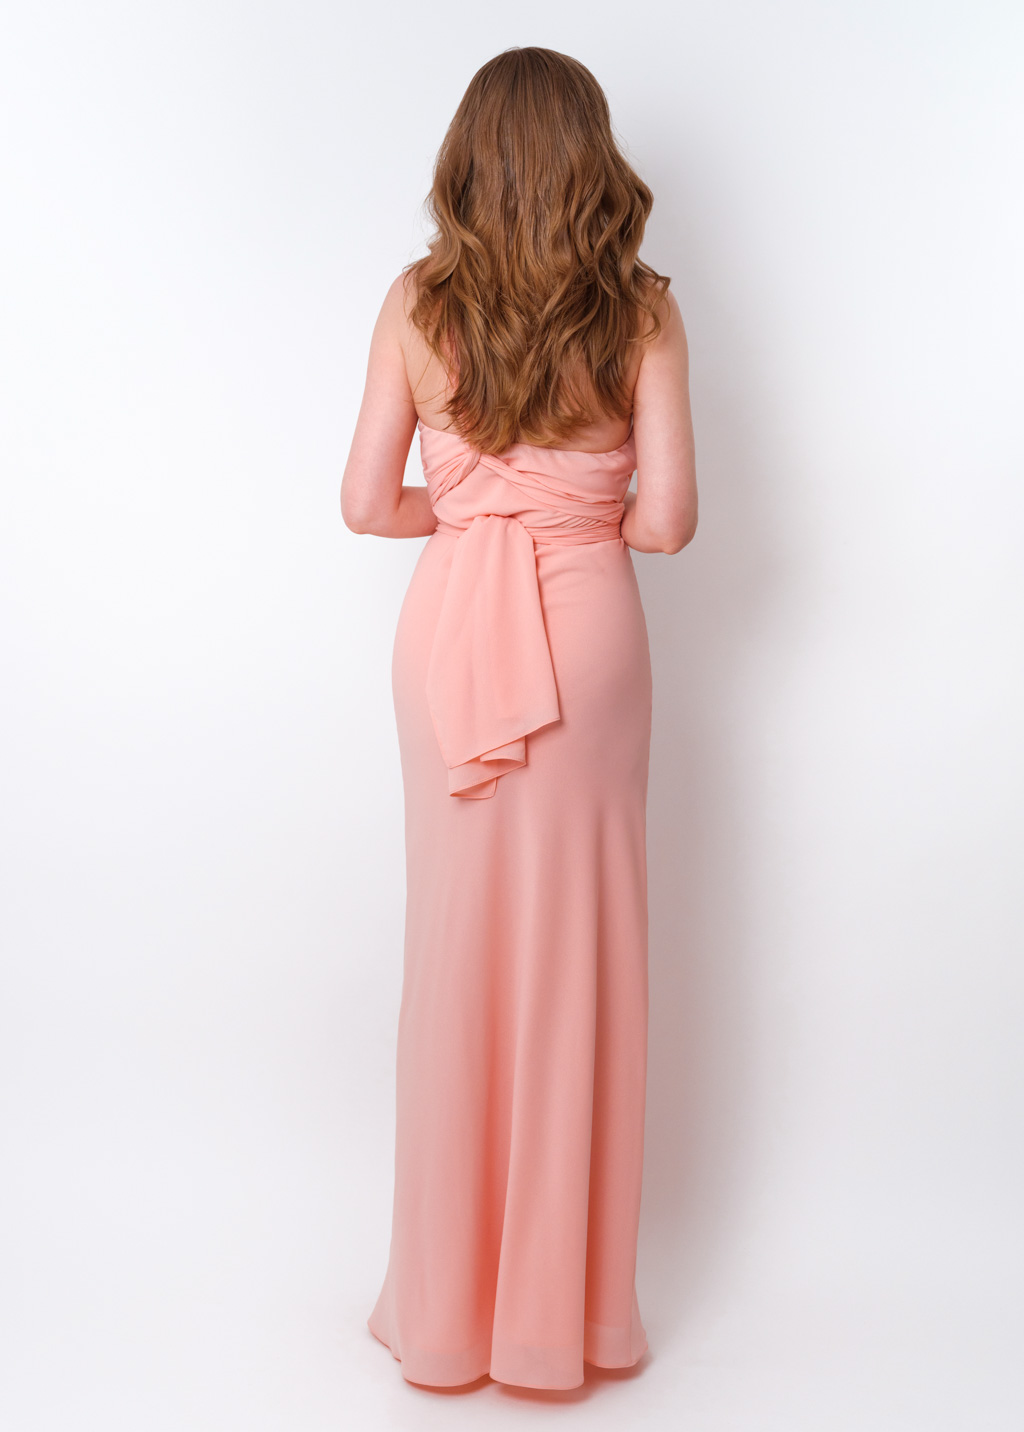 Blush pink chiffon infinity long dress